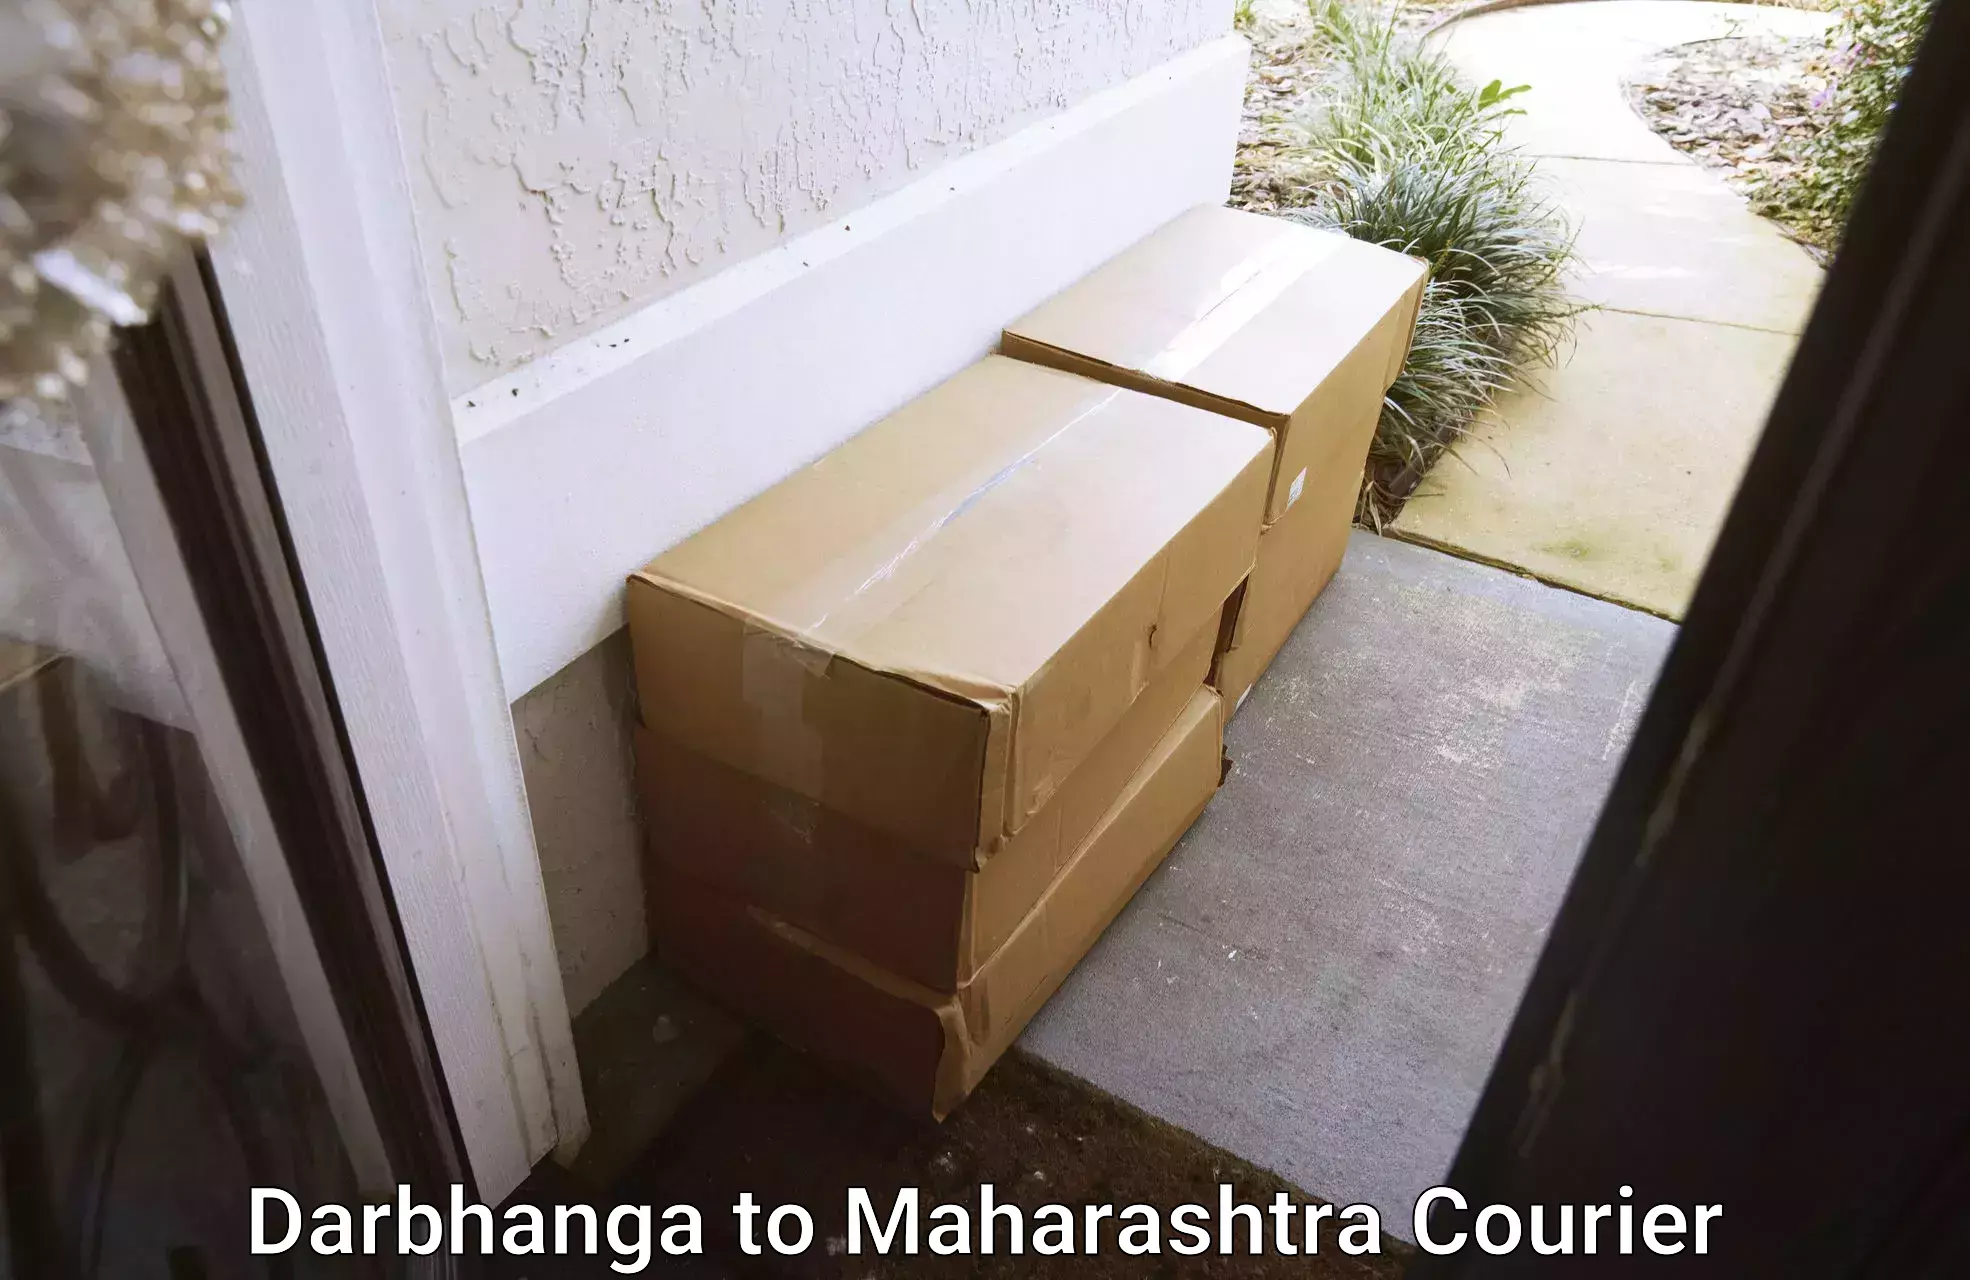 Moving and storage services Darbhanga to Mumbai